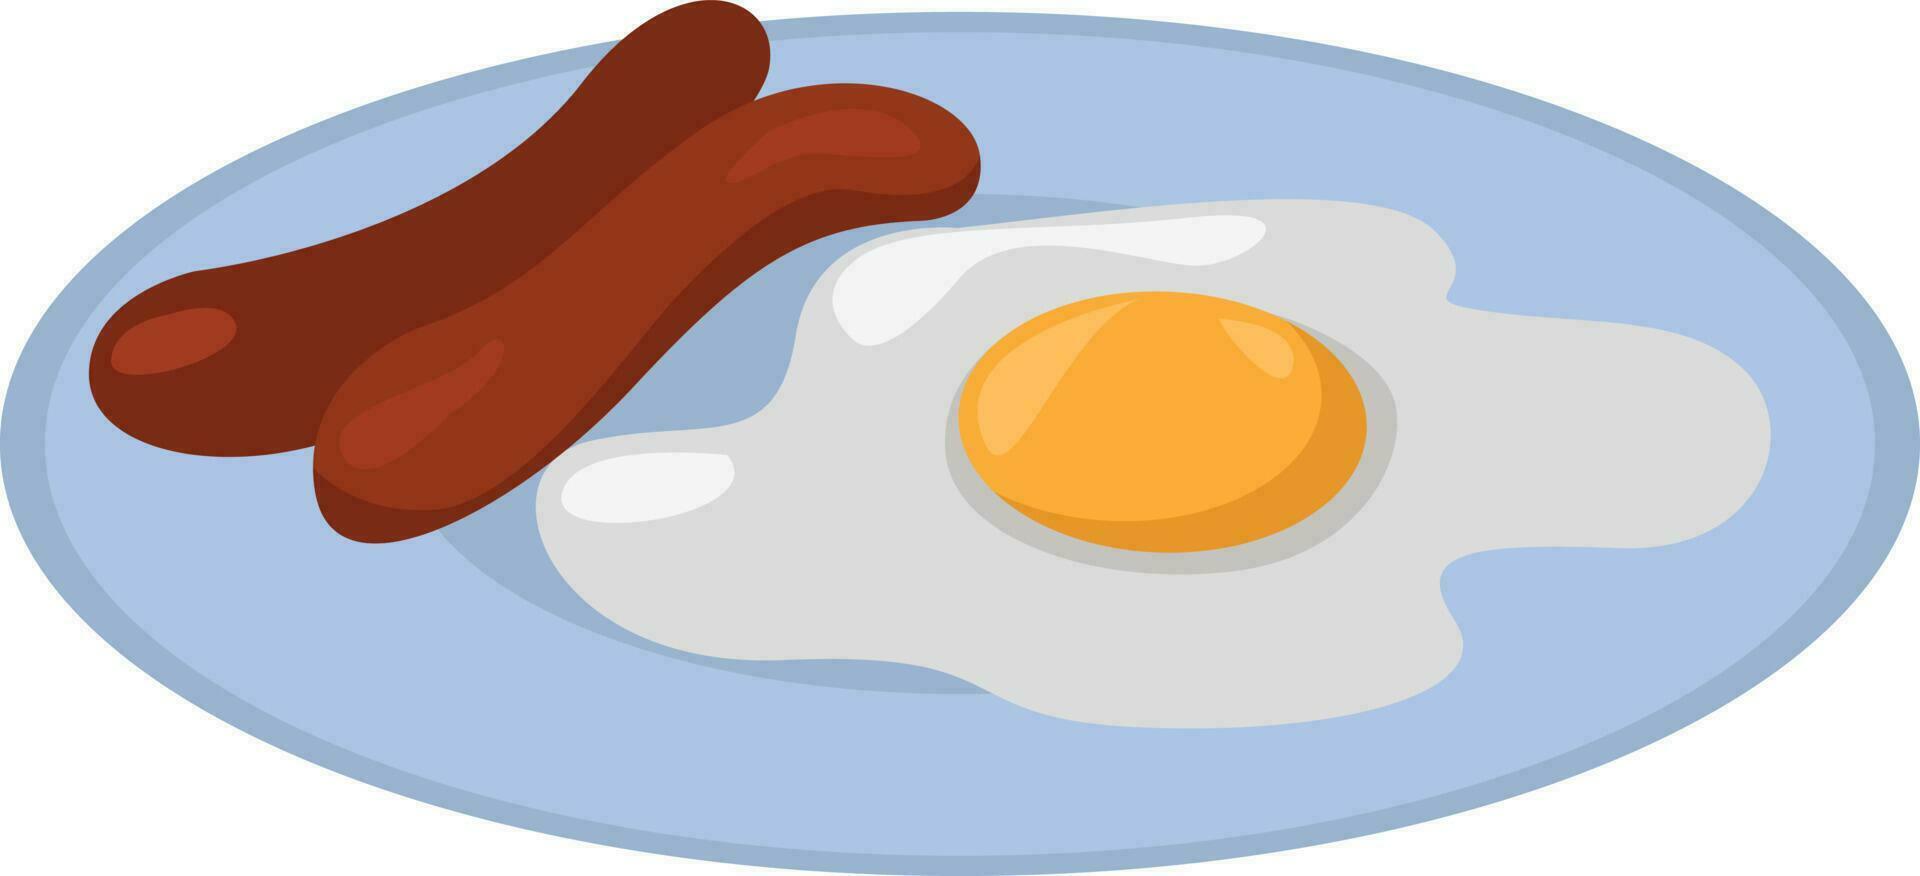 tocino y huevos,ilustración,vector sobre fondo blanco vector